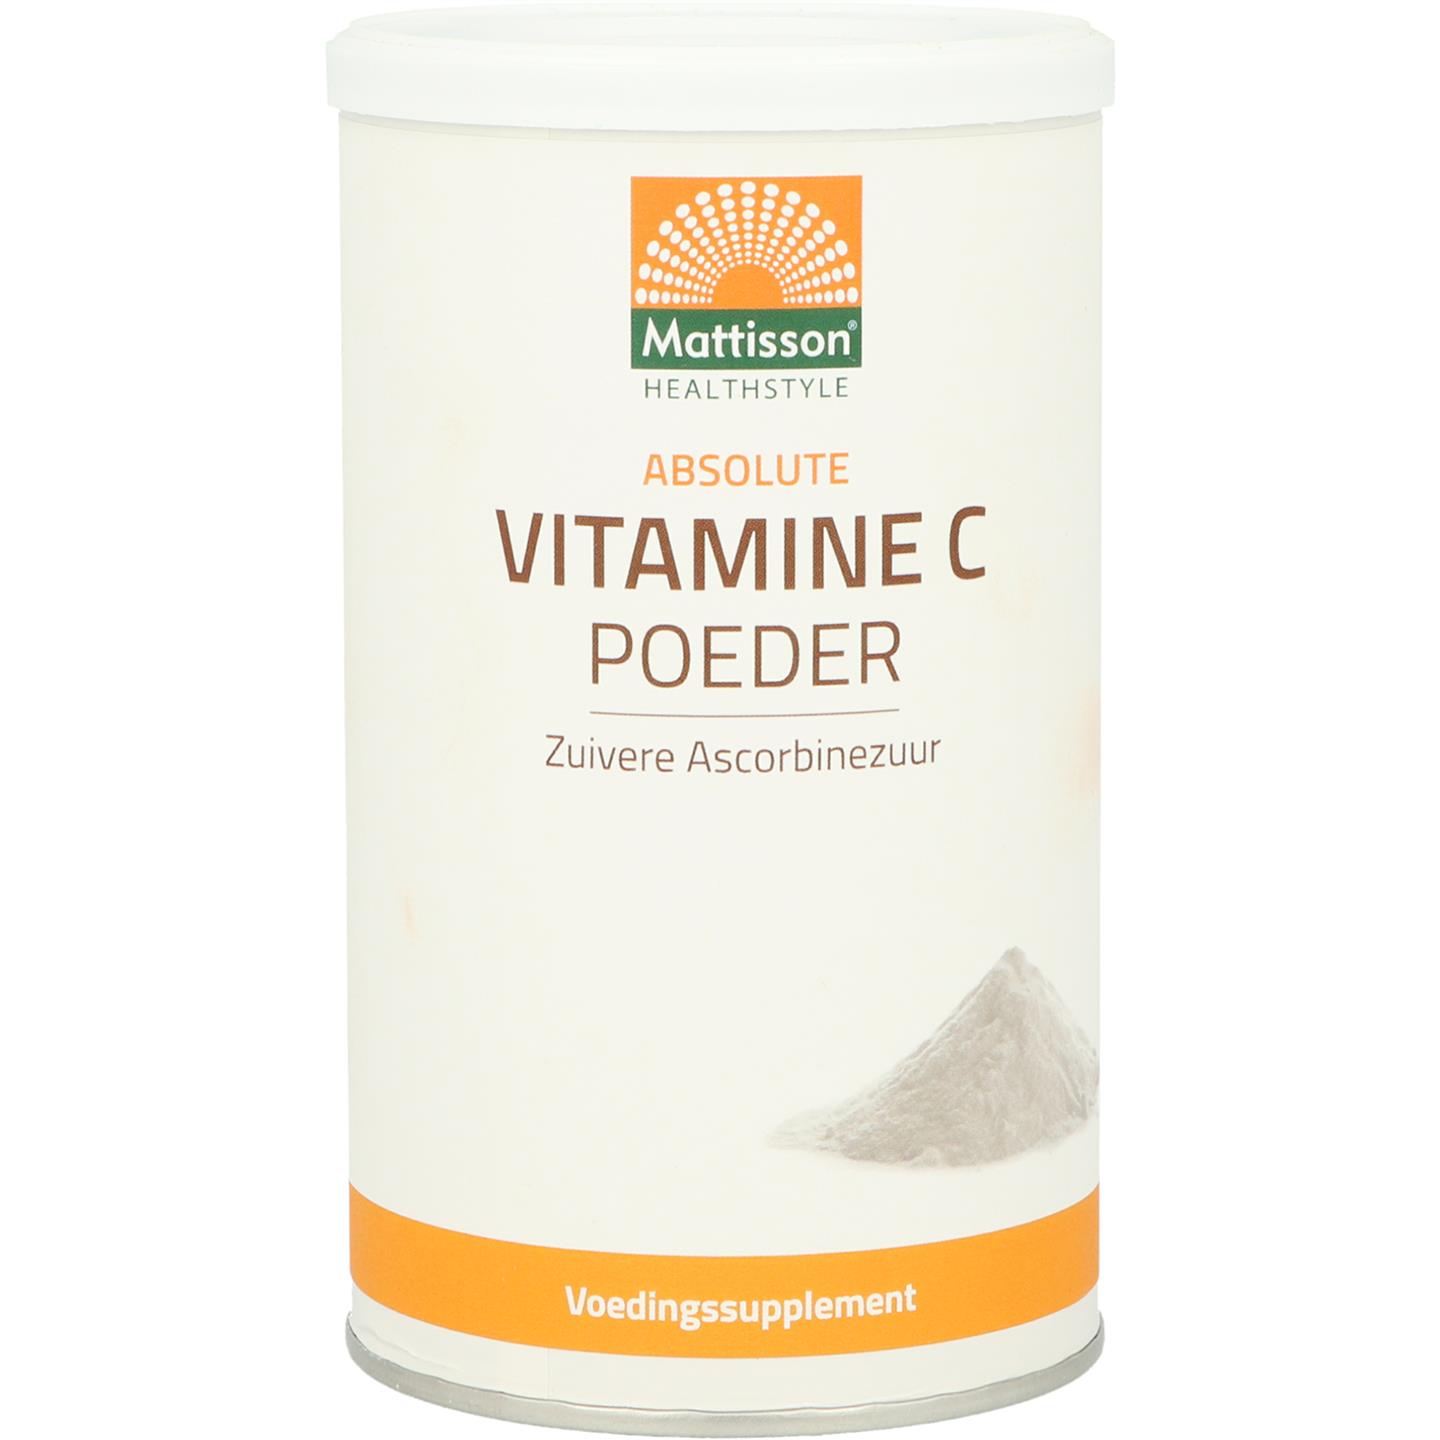 Mattisson Vitamine C poeder zuiver ascorbinezuur 350g